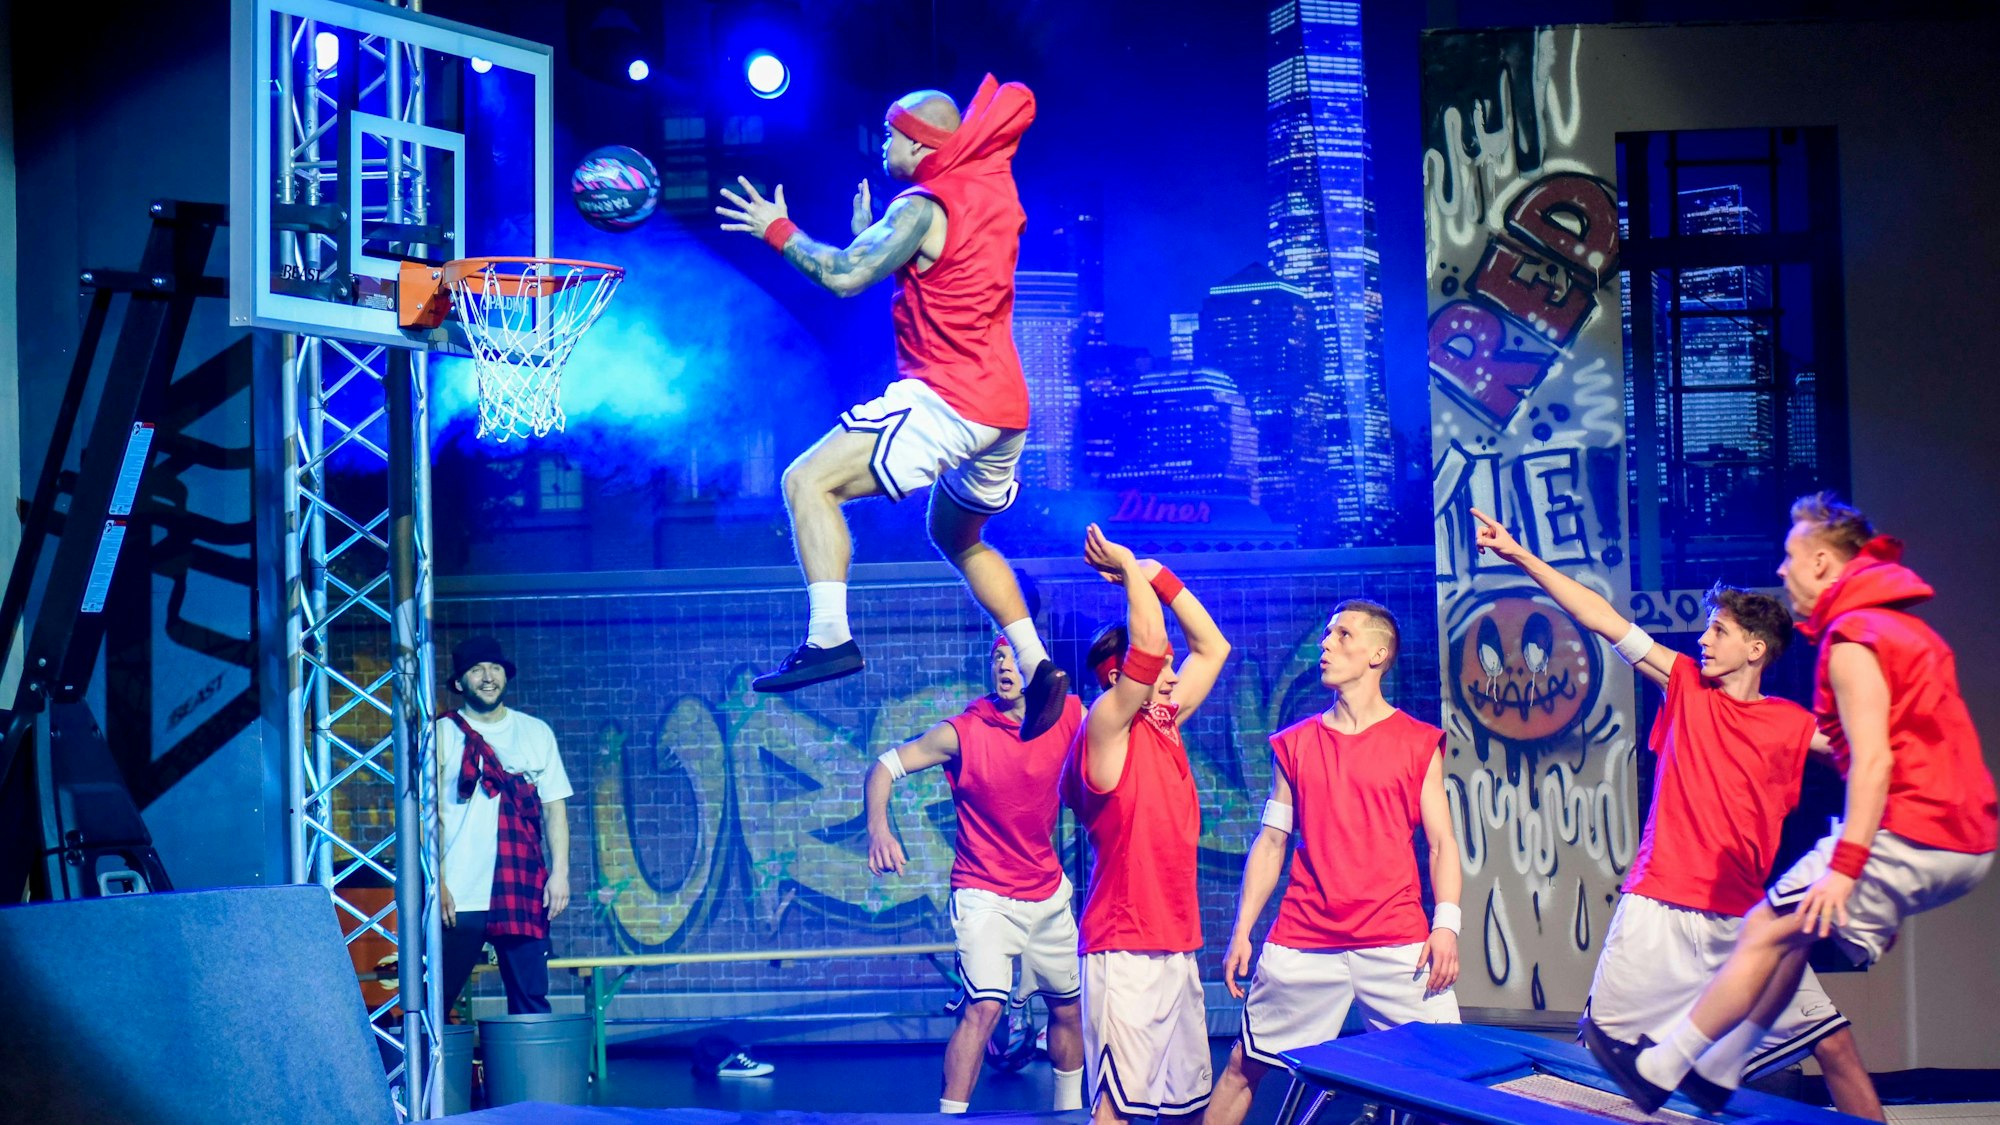 Das Bild zeigt sechs junge Männer, die akrobatisch von einem Trampolin an einen Basketballkorb springen.